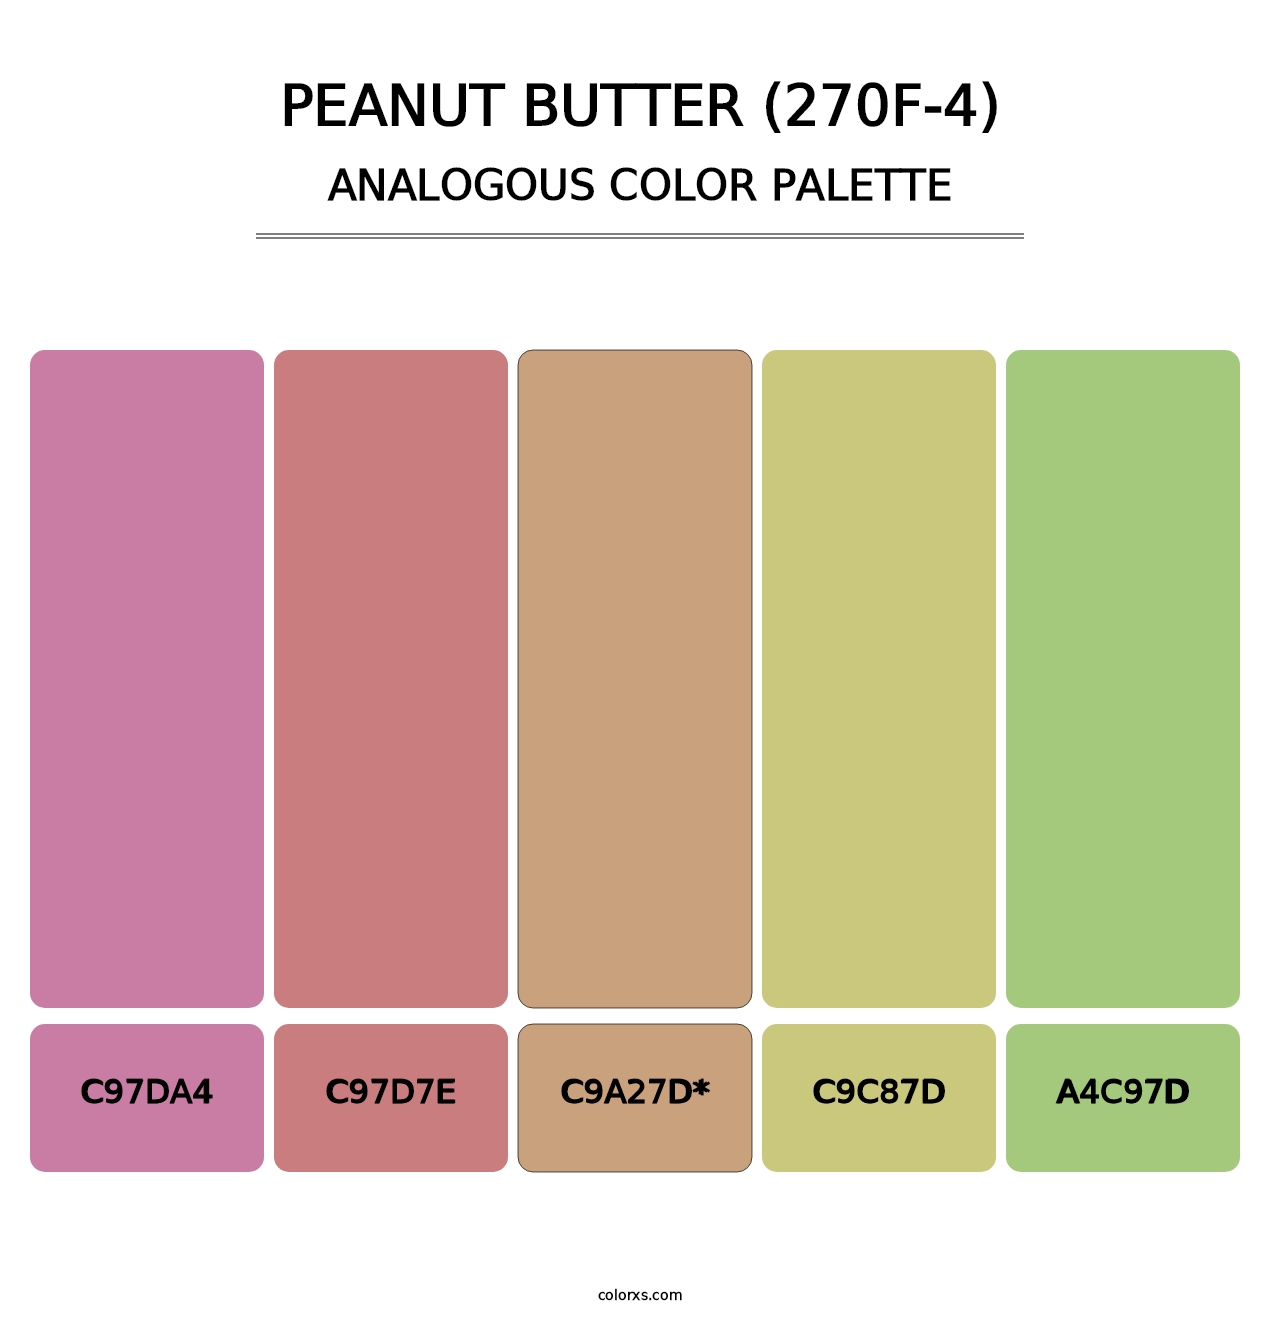 Peanut Butter (270F-4) - Analogous Color Palette